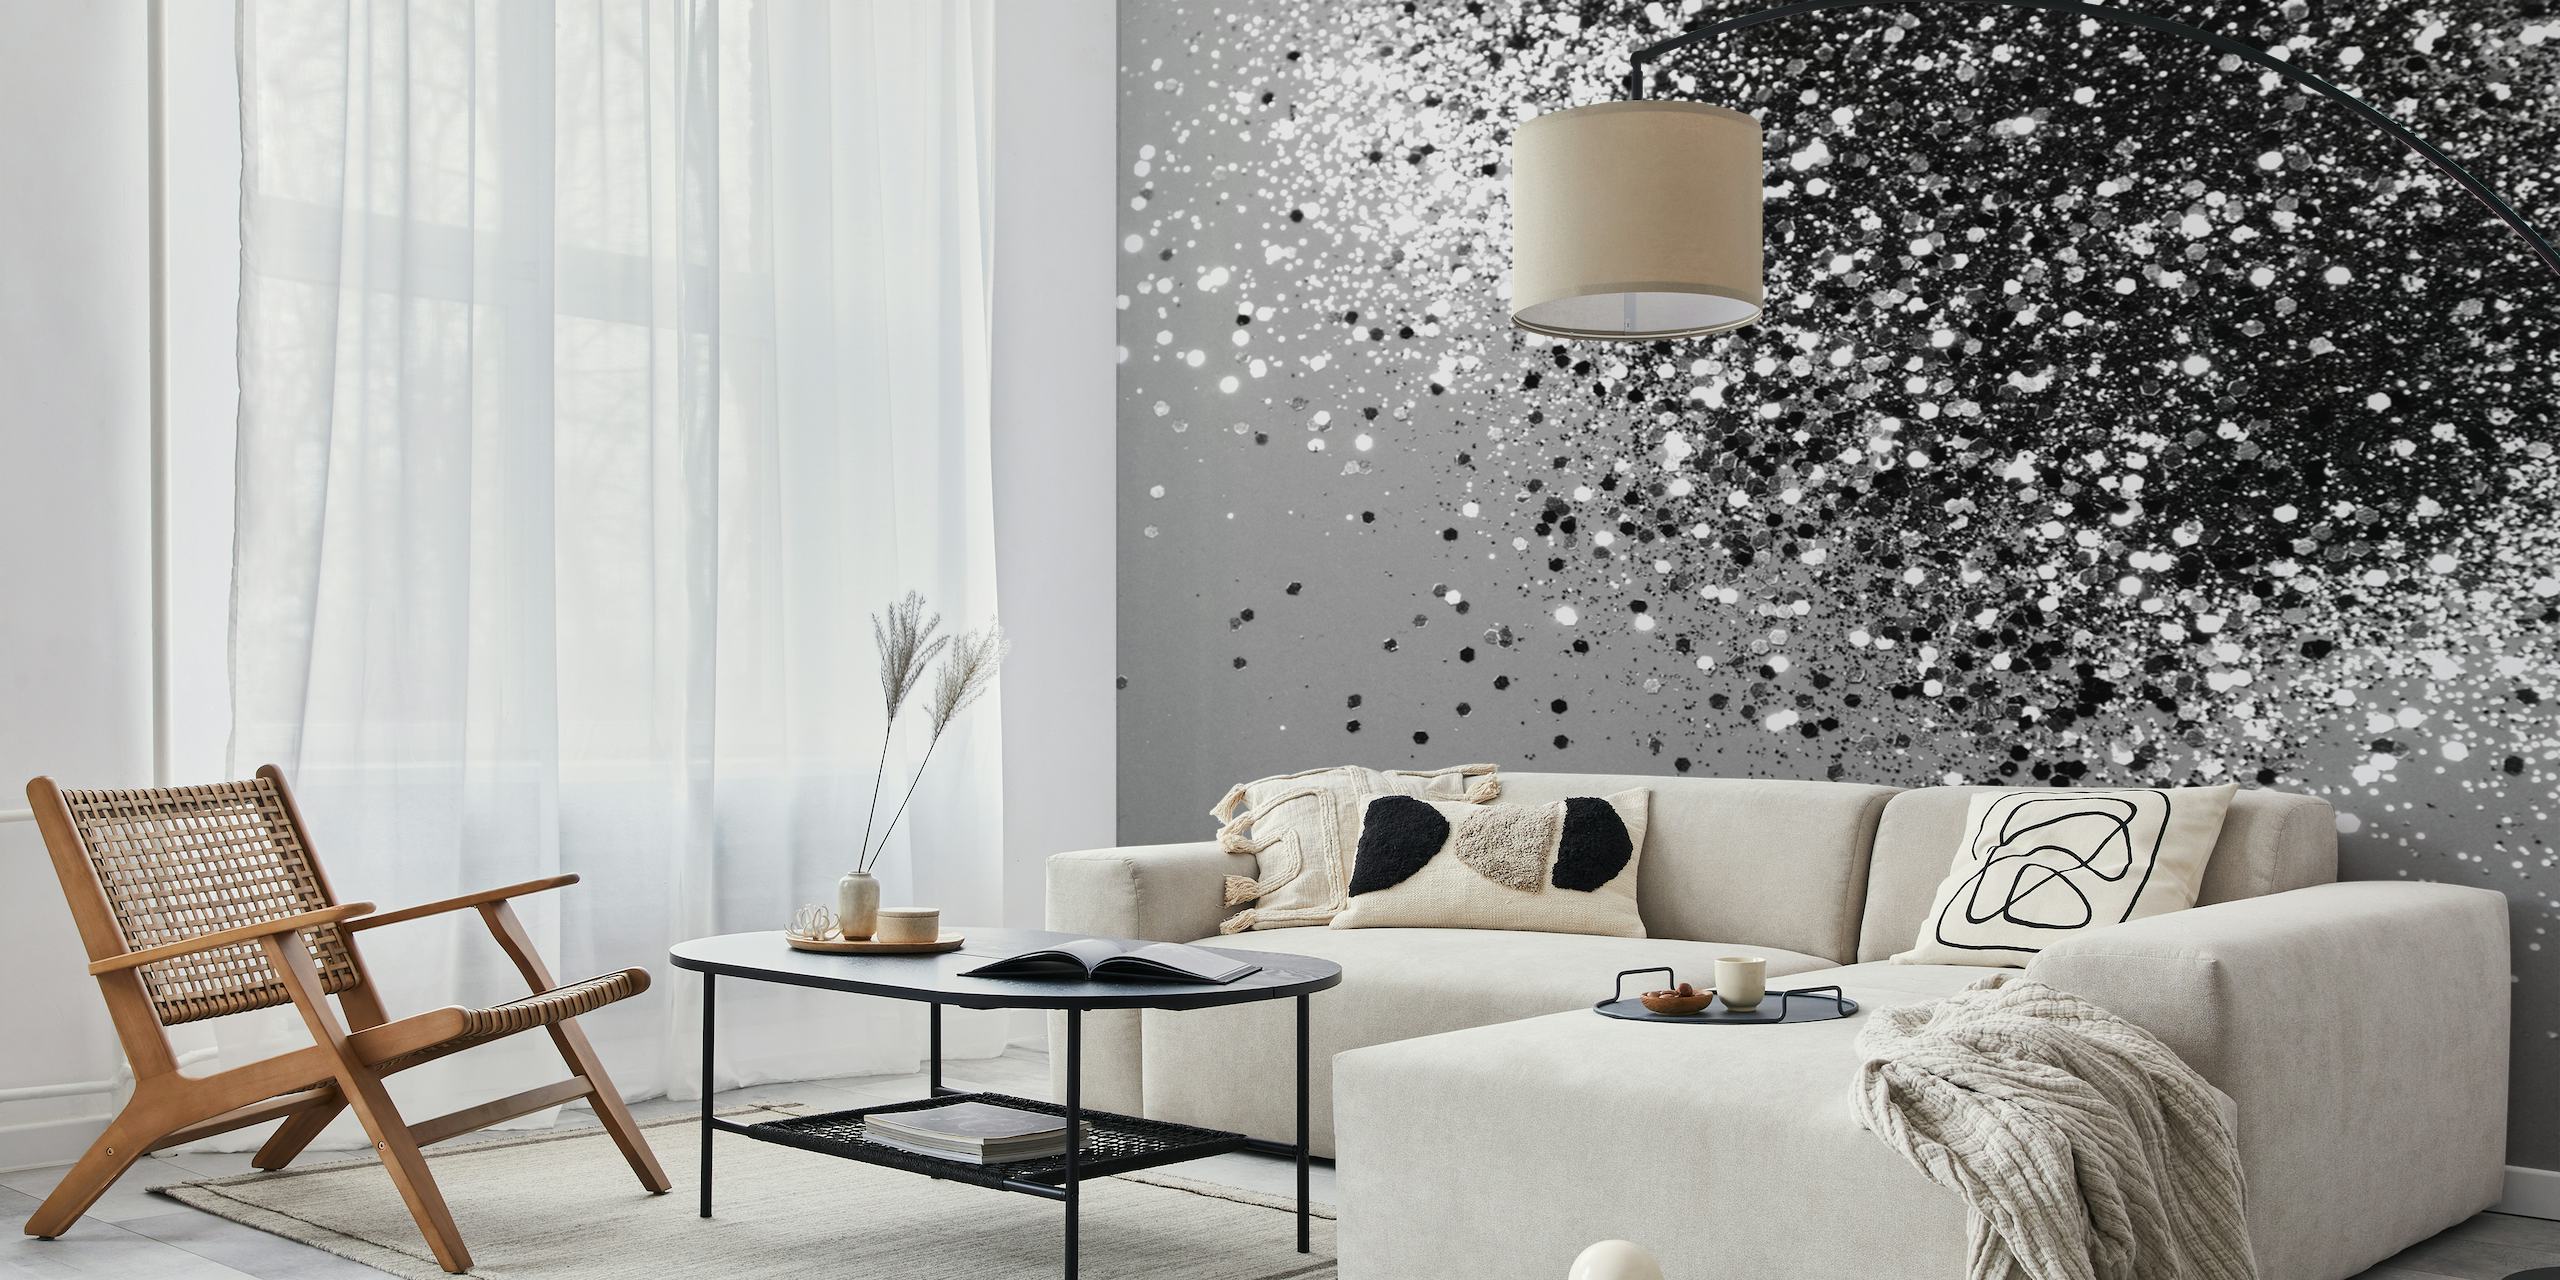 Fotomural vinílico de parede com glitter prateado e cinza para um toque de elegância